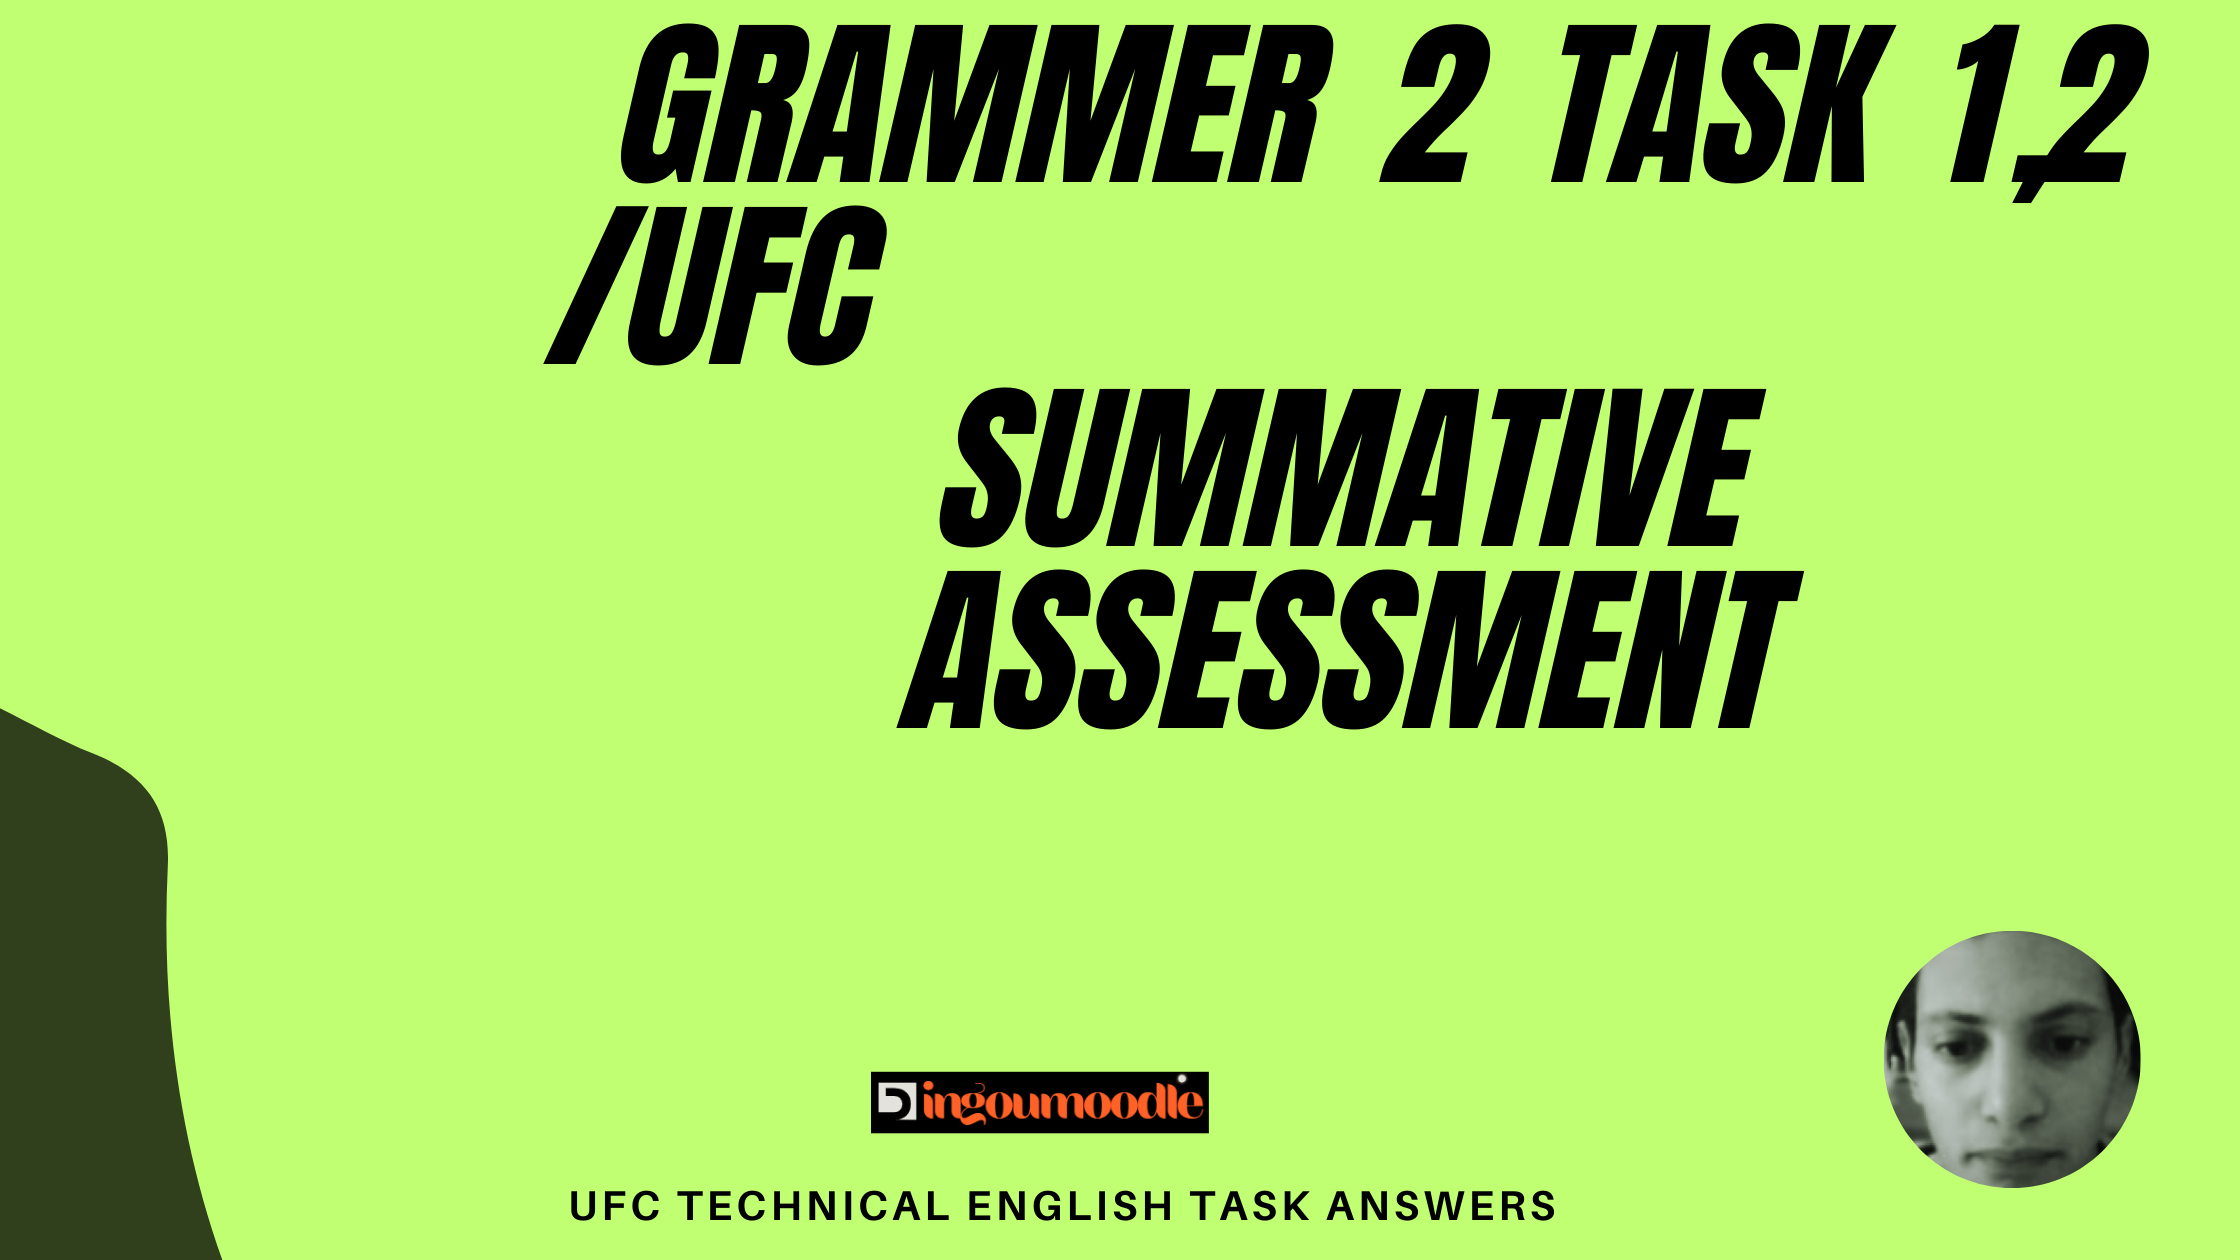 Summative Assessment Grammar 2 task 1,2 /UFC